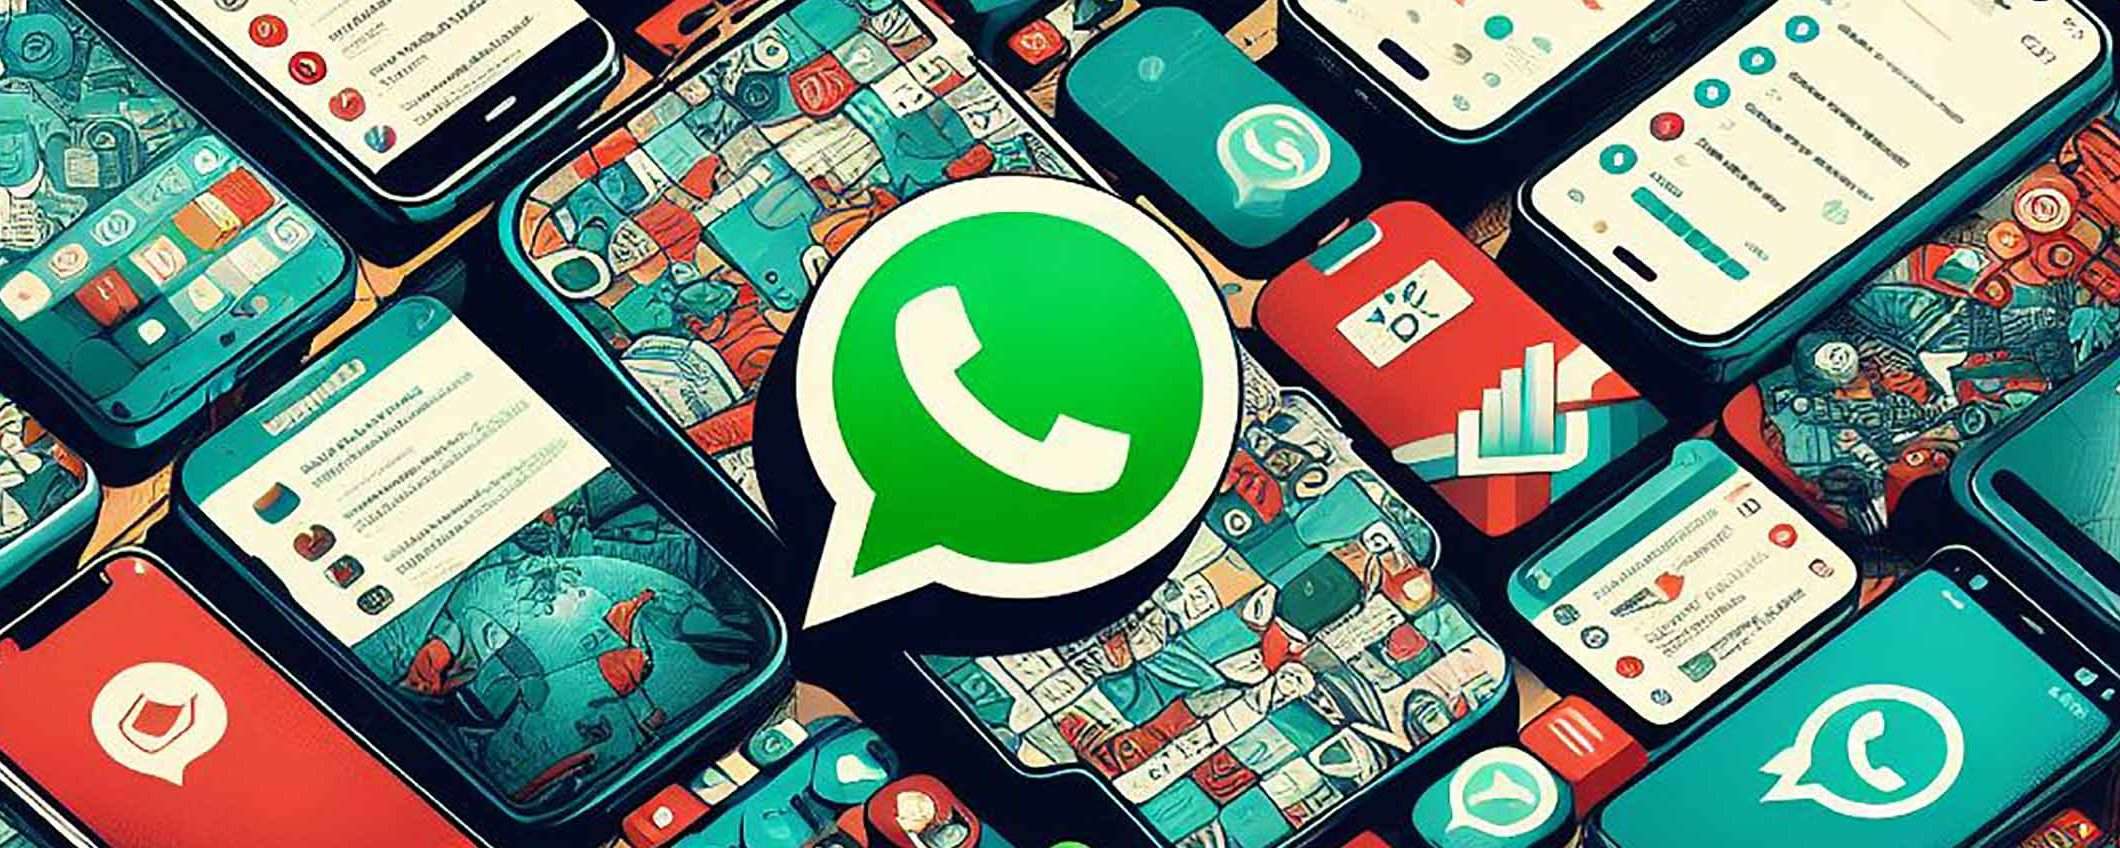 Sarà WhatsApp a prendere il posto di Facebook?